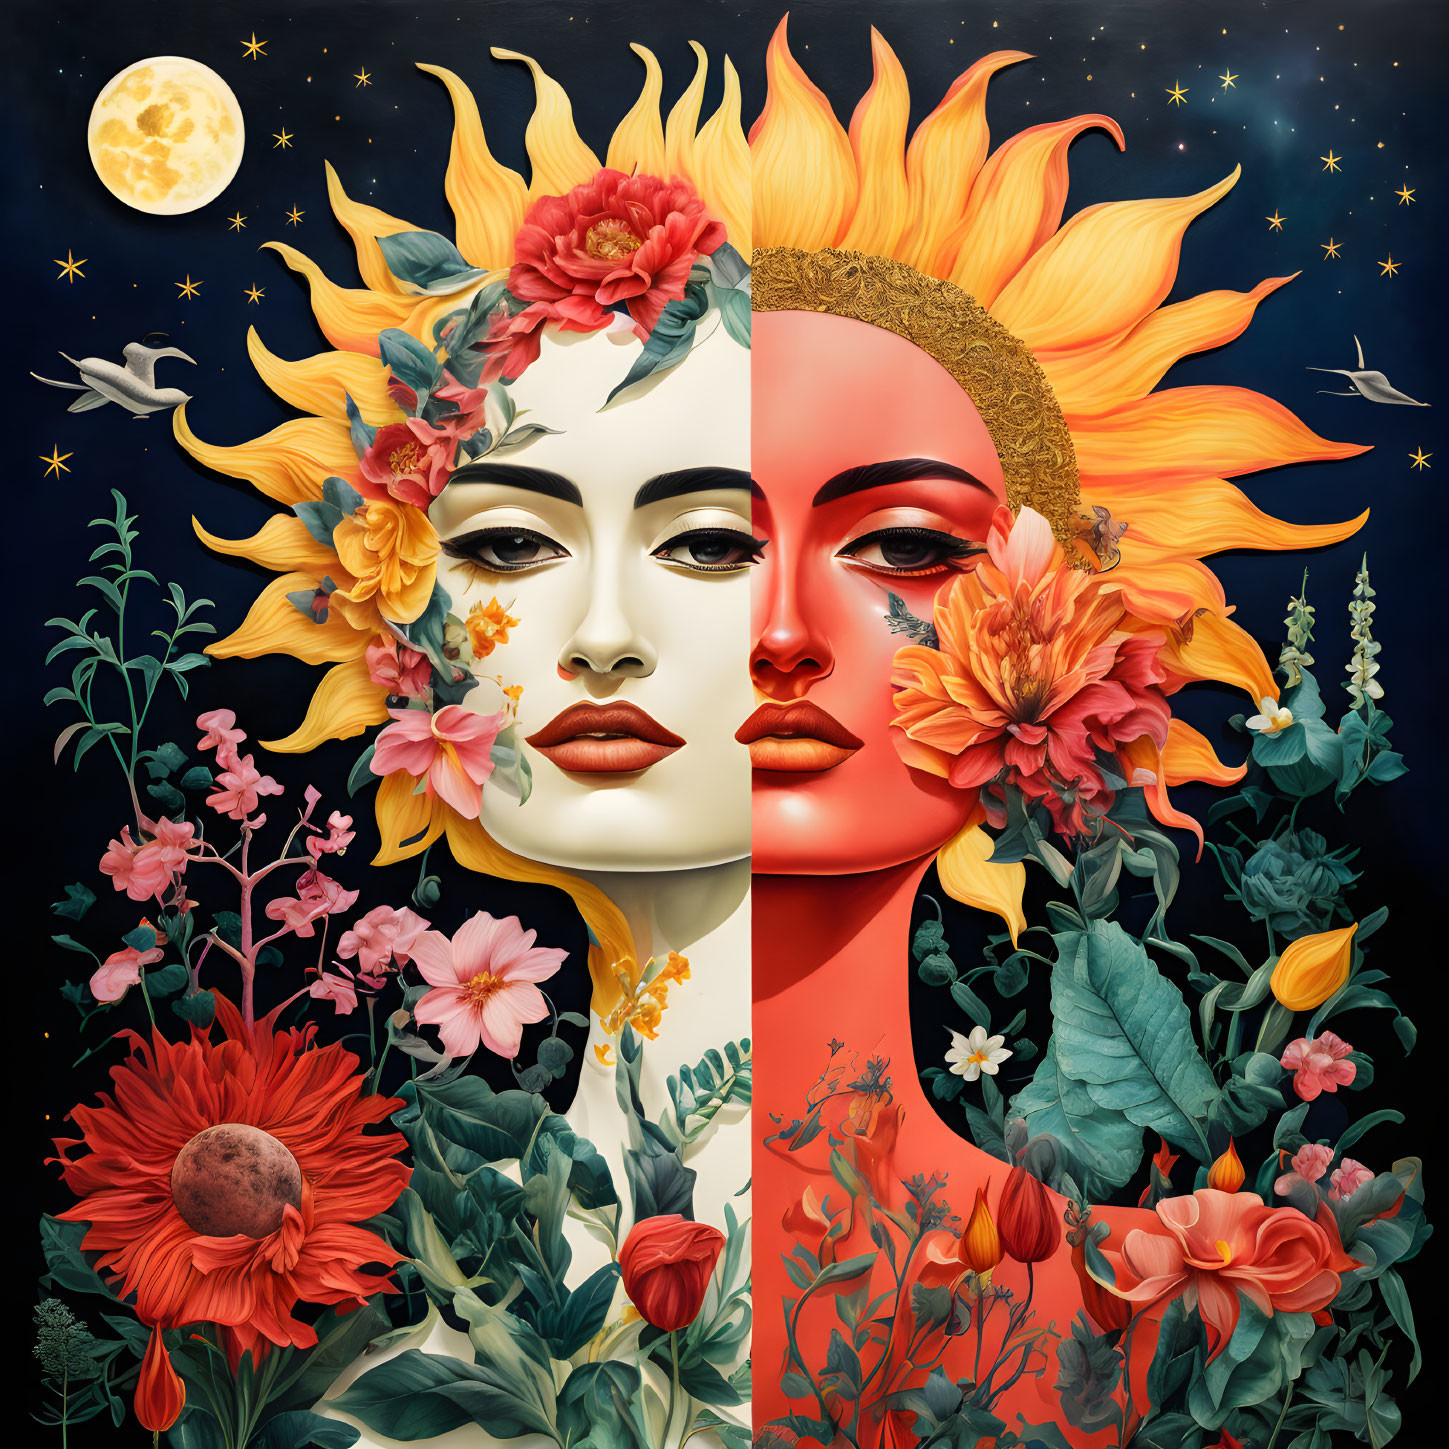 Dual Moon's Dream: Frida's Surreal Blossoms